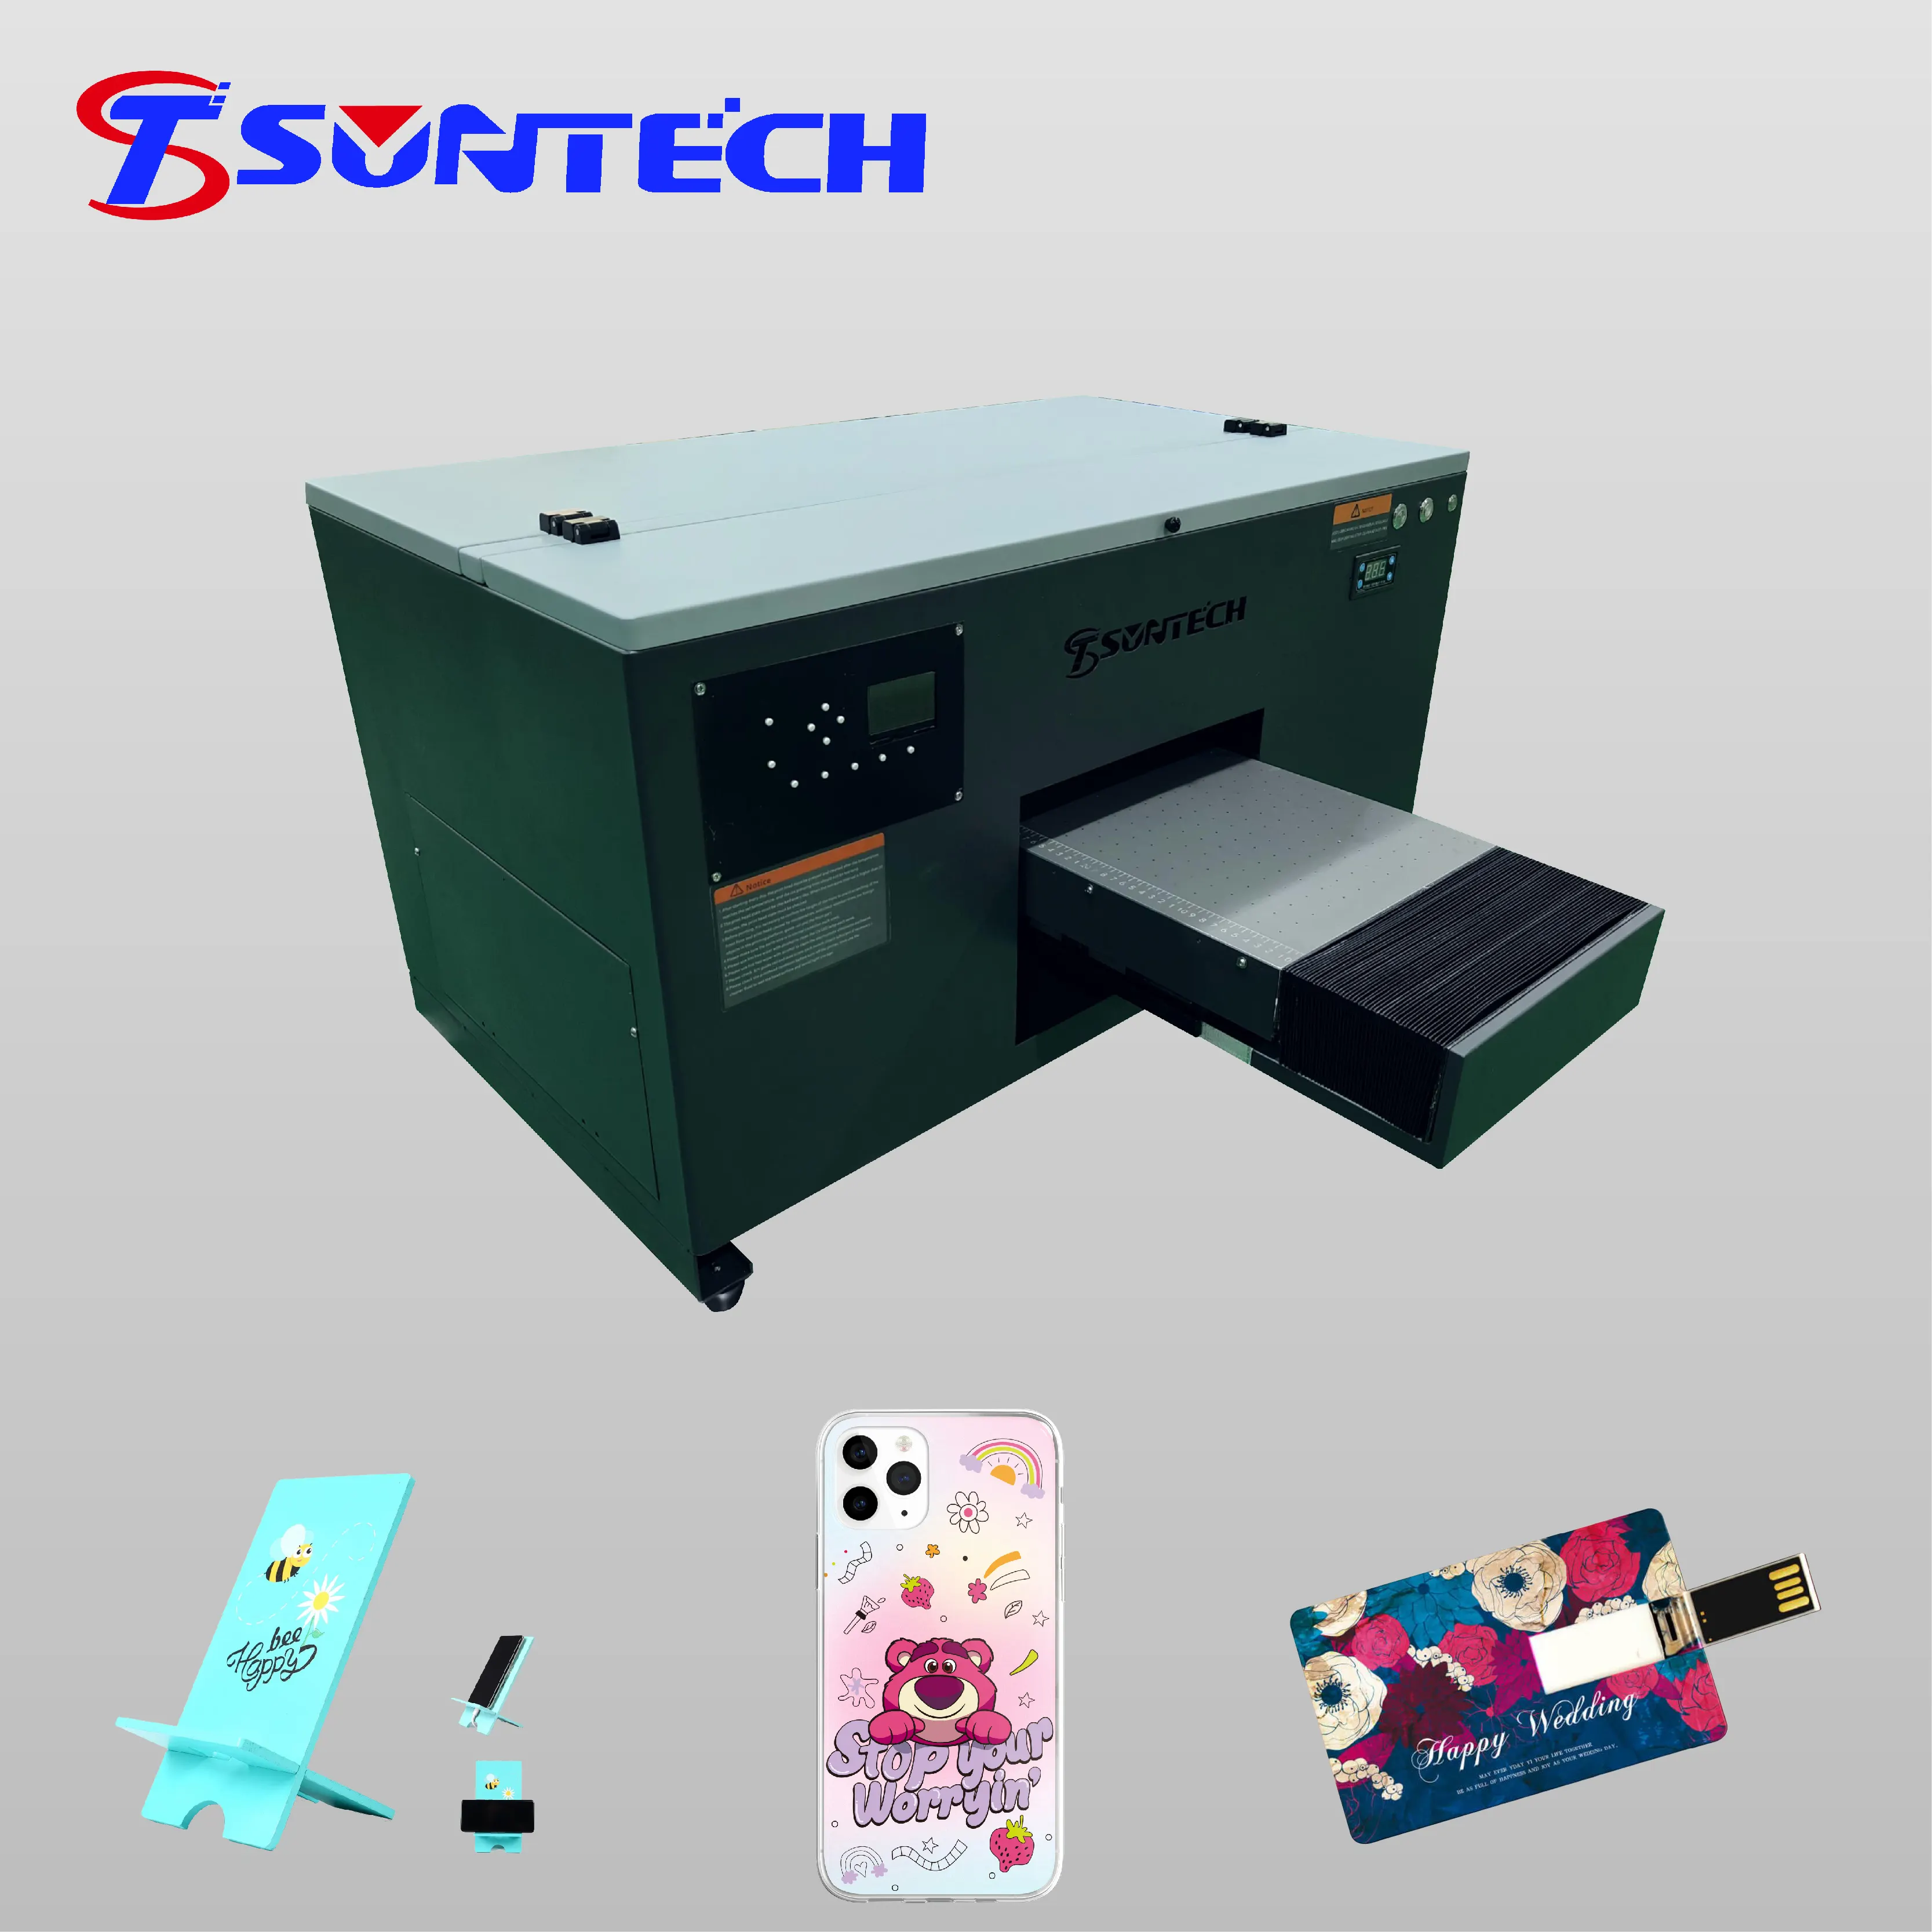 Suntech A3 tamaño UV impresora plana con barniz xp600 máquina de impresión A3 impresora UV led